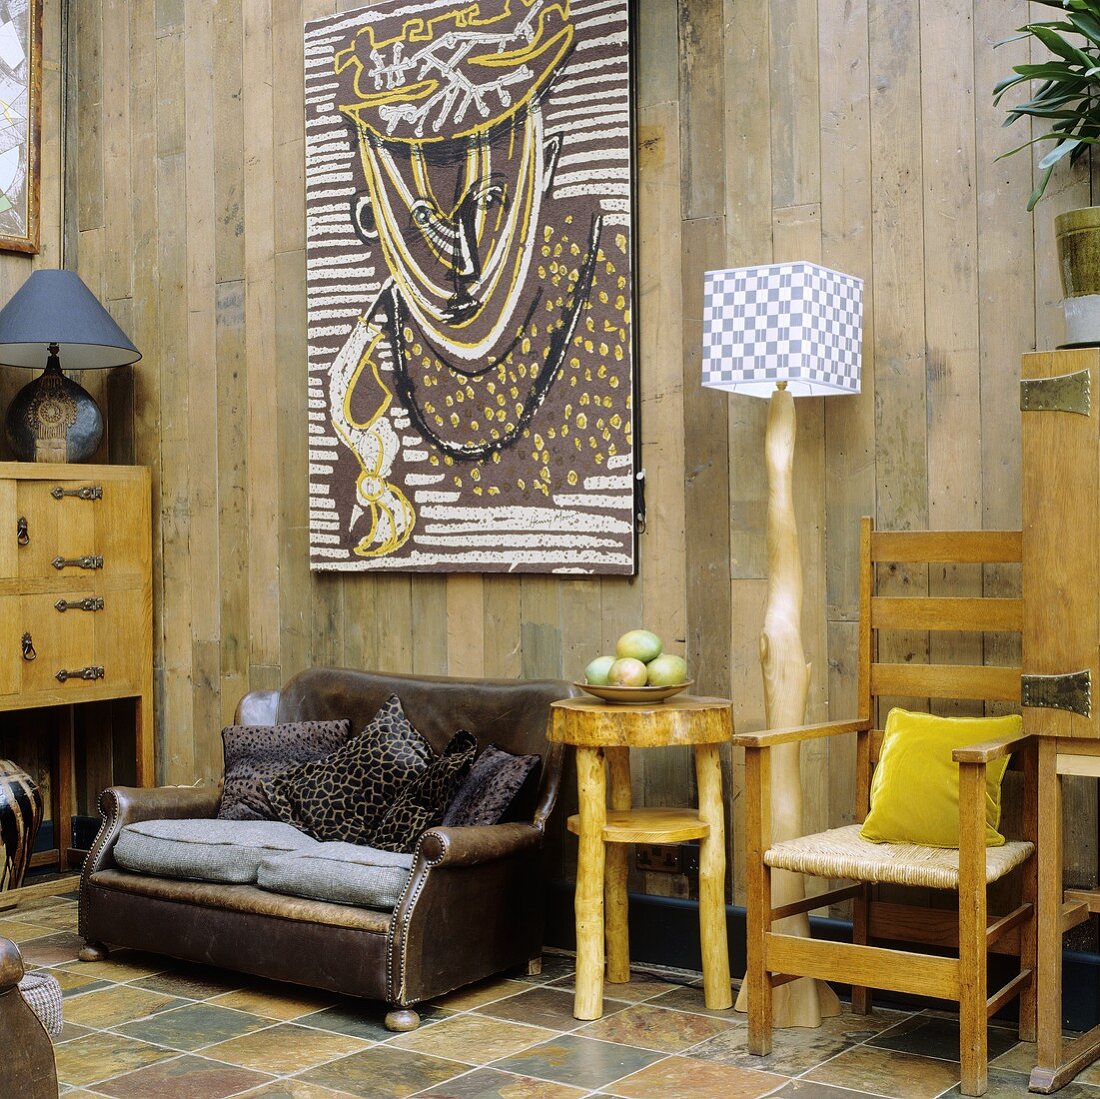 Rustikaler Raum mit Ledersessel und selbstgebauten Möbeln vor Holzwand